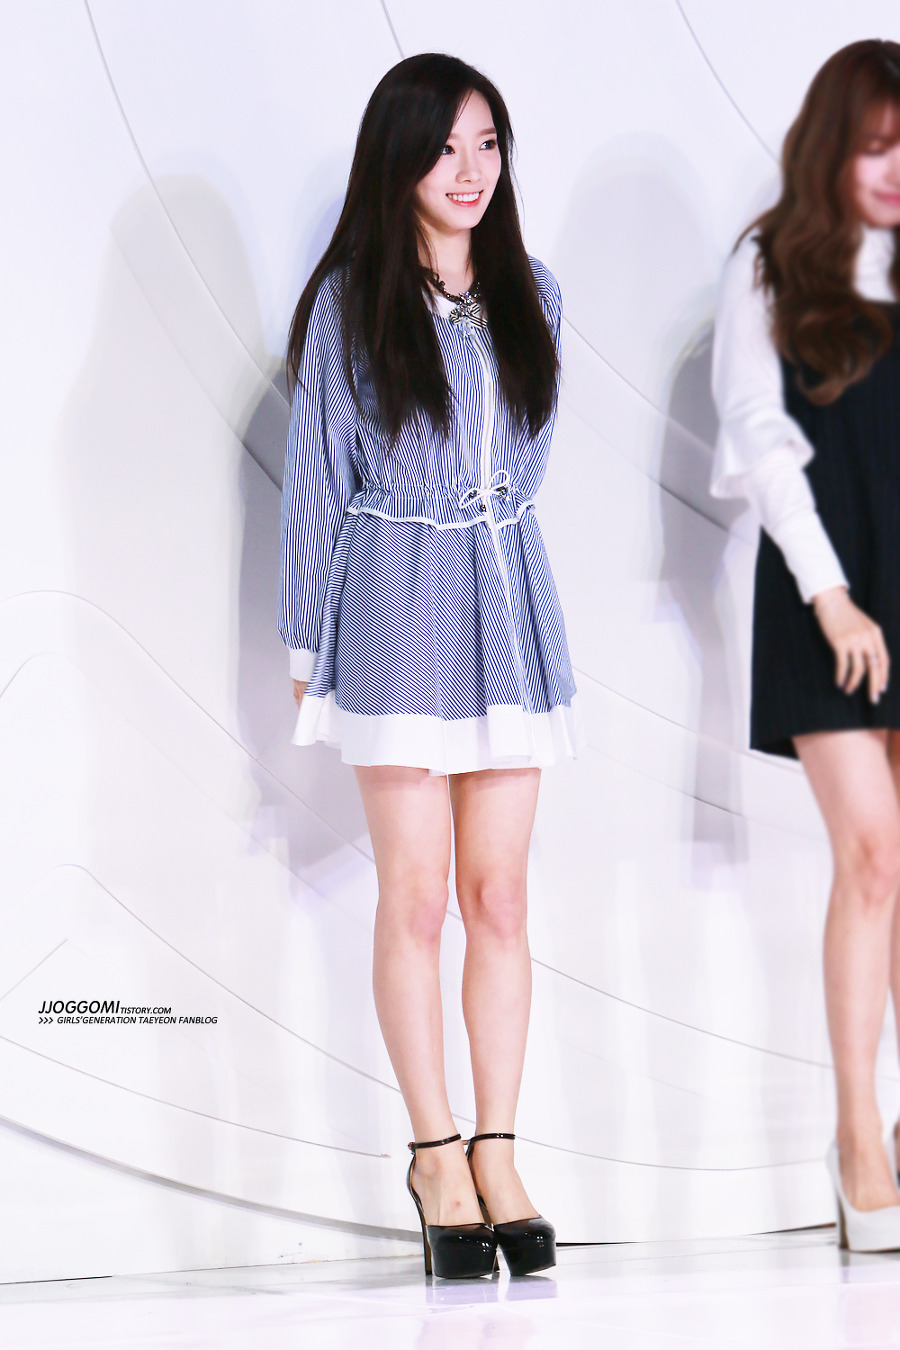 [PIC][29-01-2015]TaeTiSeo xuất hiện tại Lễ mở màn "Fashion Kode 2015 FW" với tư cách là Đại sứ vào trưa nay - Page 3 2431234D54CB3887057869